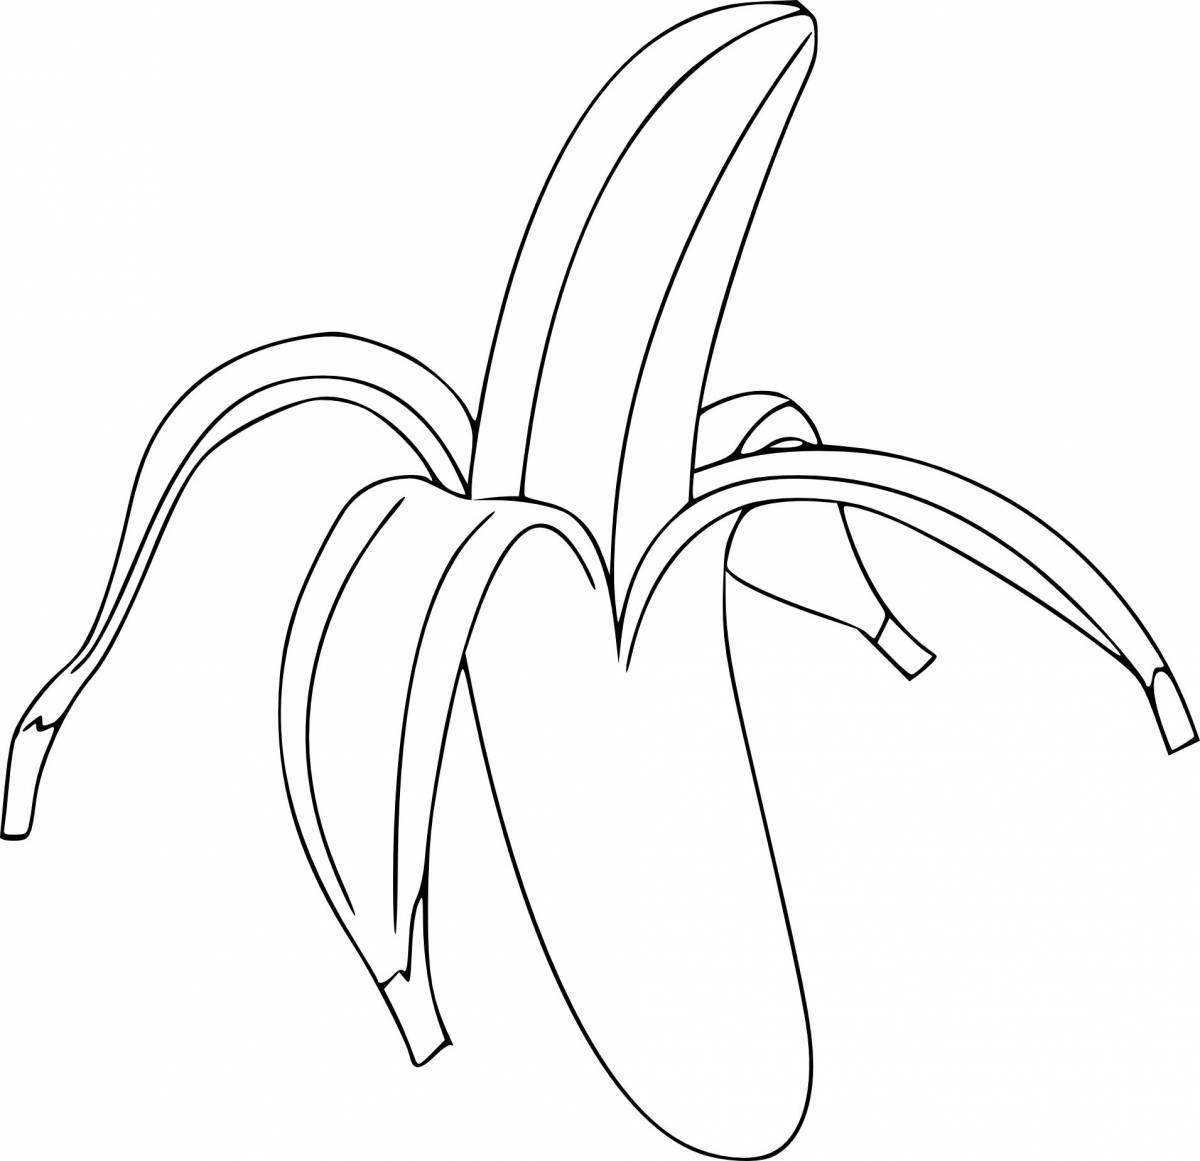 Банановая раскраска color-frenzy для детей 2-3 лет